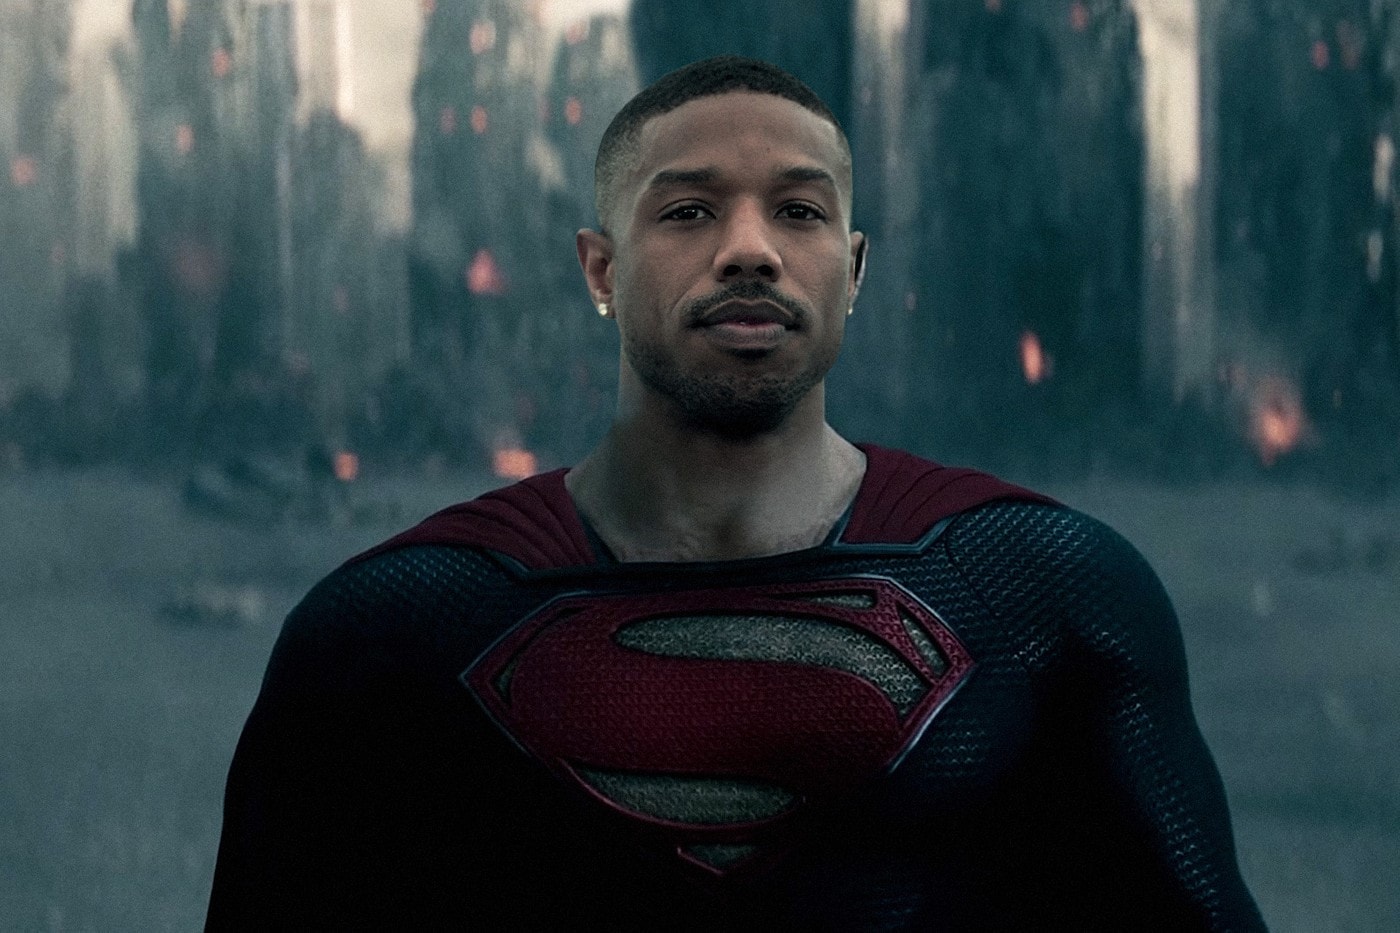 傳言新版「超人」將有望由非裔演員擔任